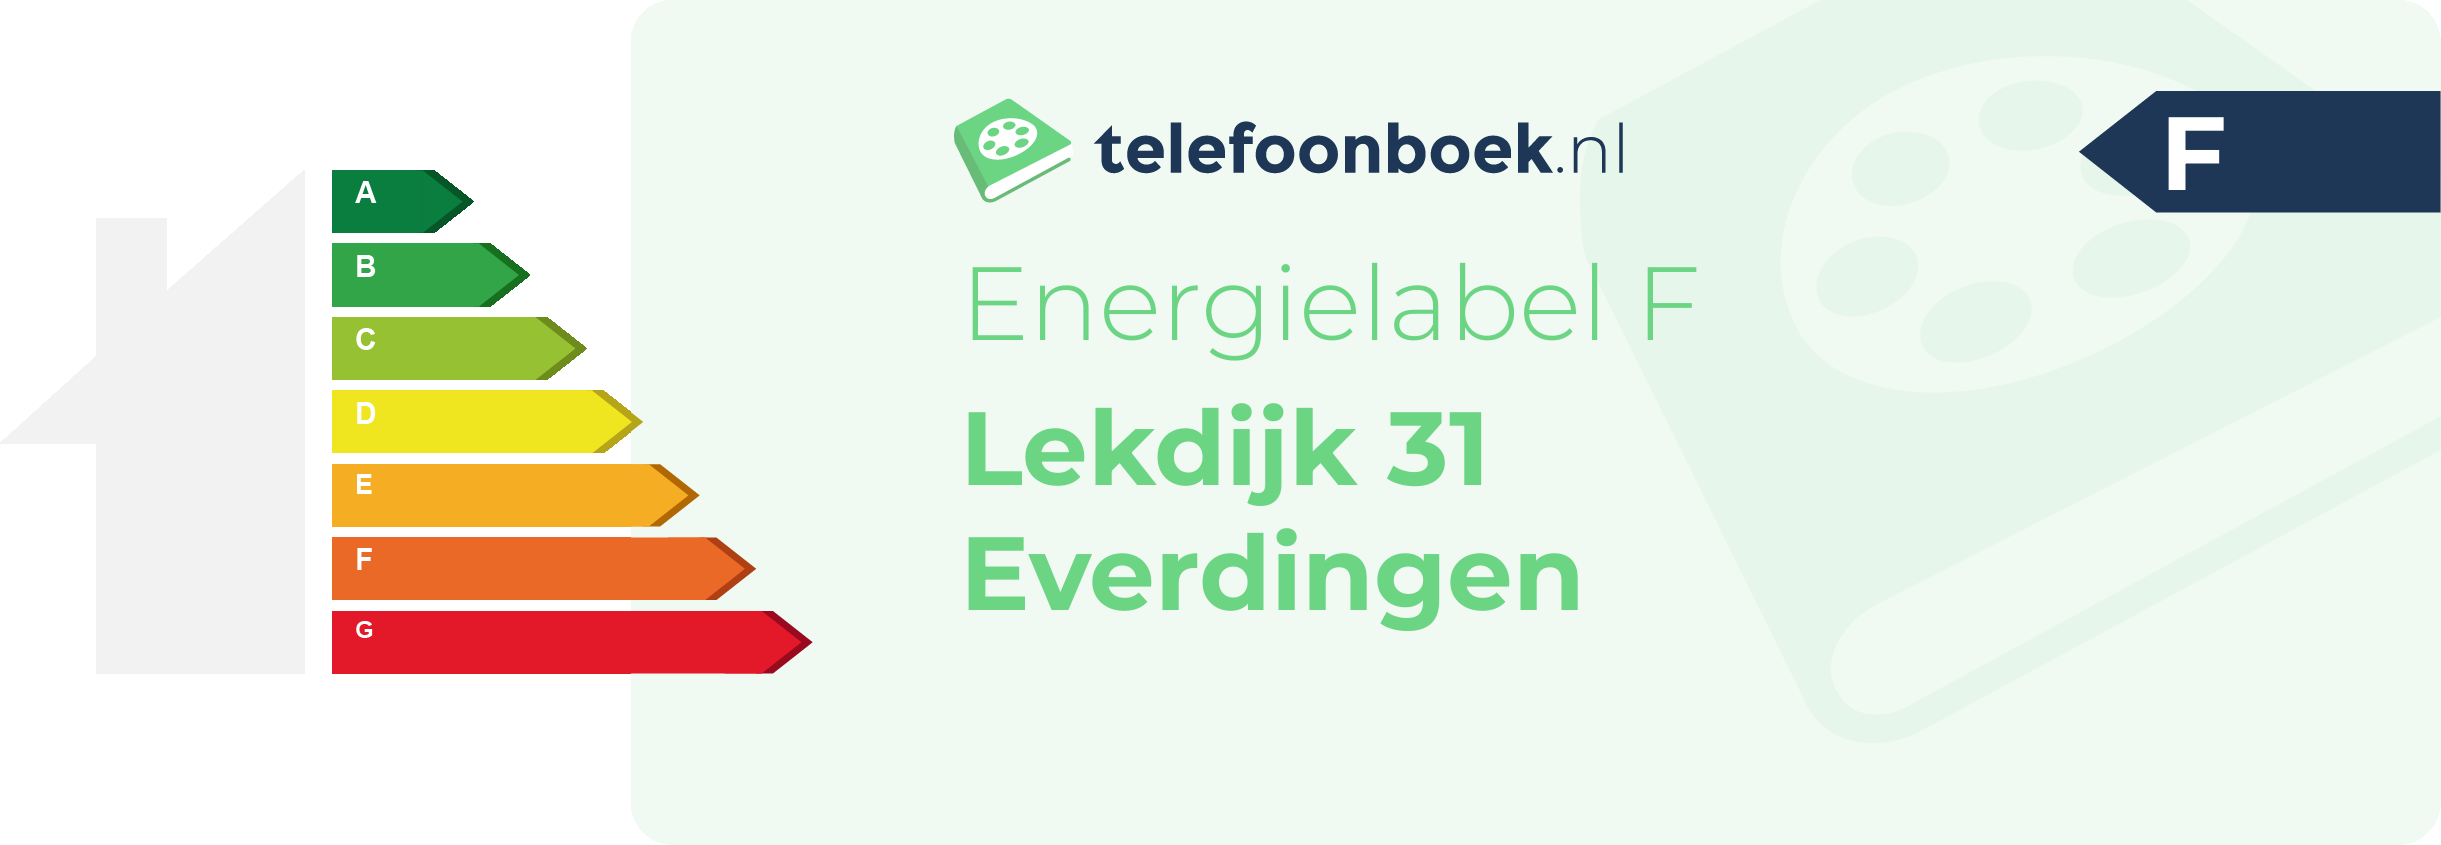 Energielabel Lekdijk 31 Everdingen